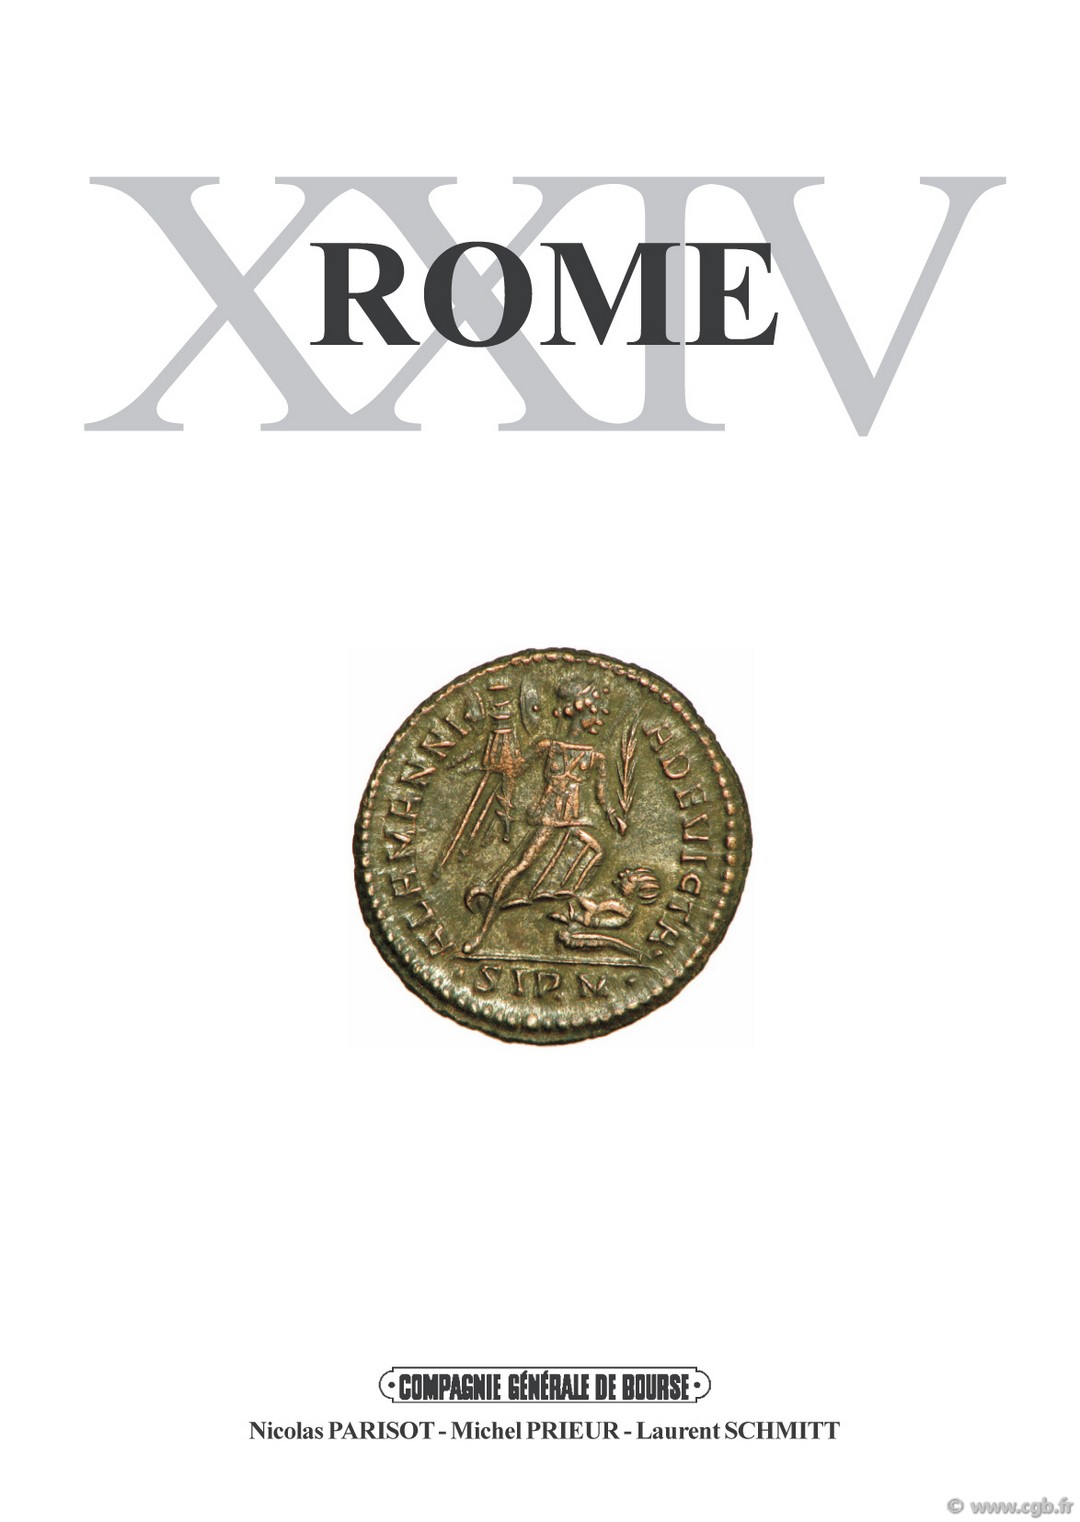 ROME 24, le monnayage de bronze de Sirmium (324-326) PARISOT Nicolas, PRIEUR Michel, SCHMITT Laurent